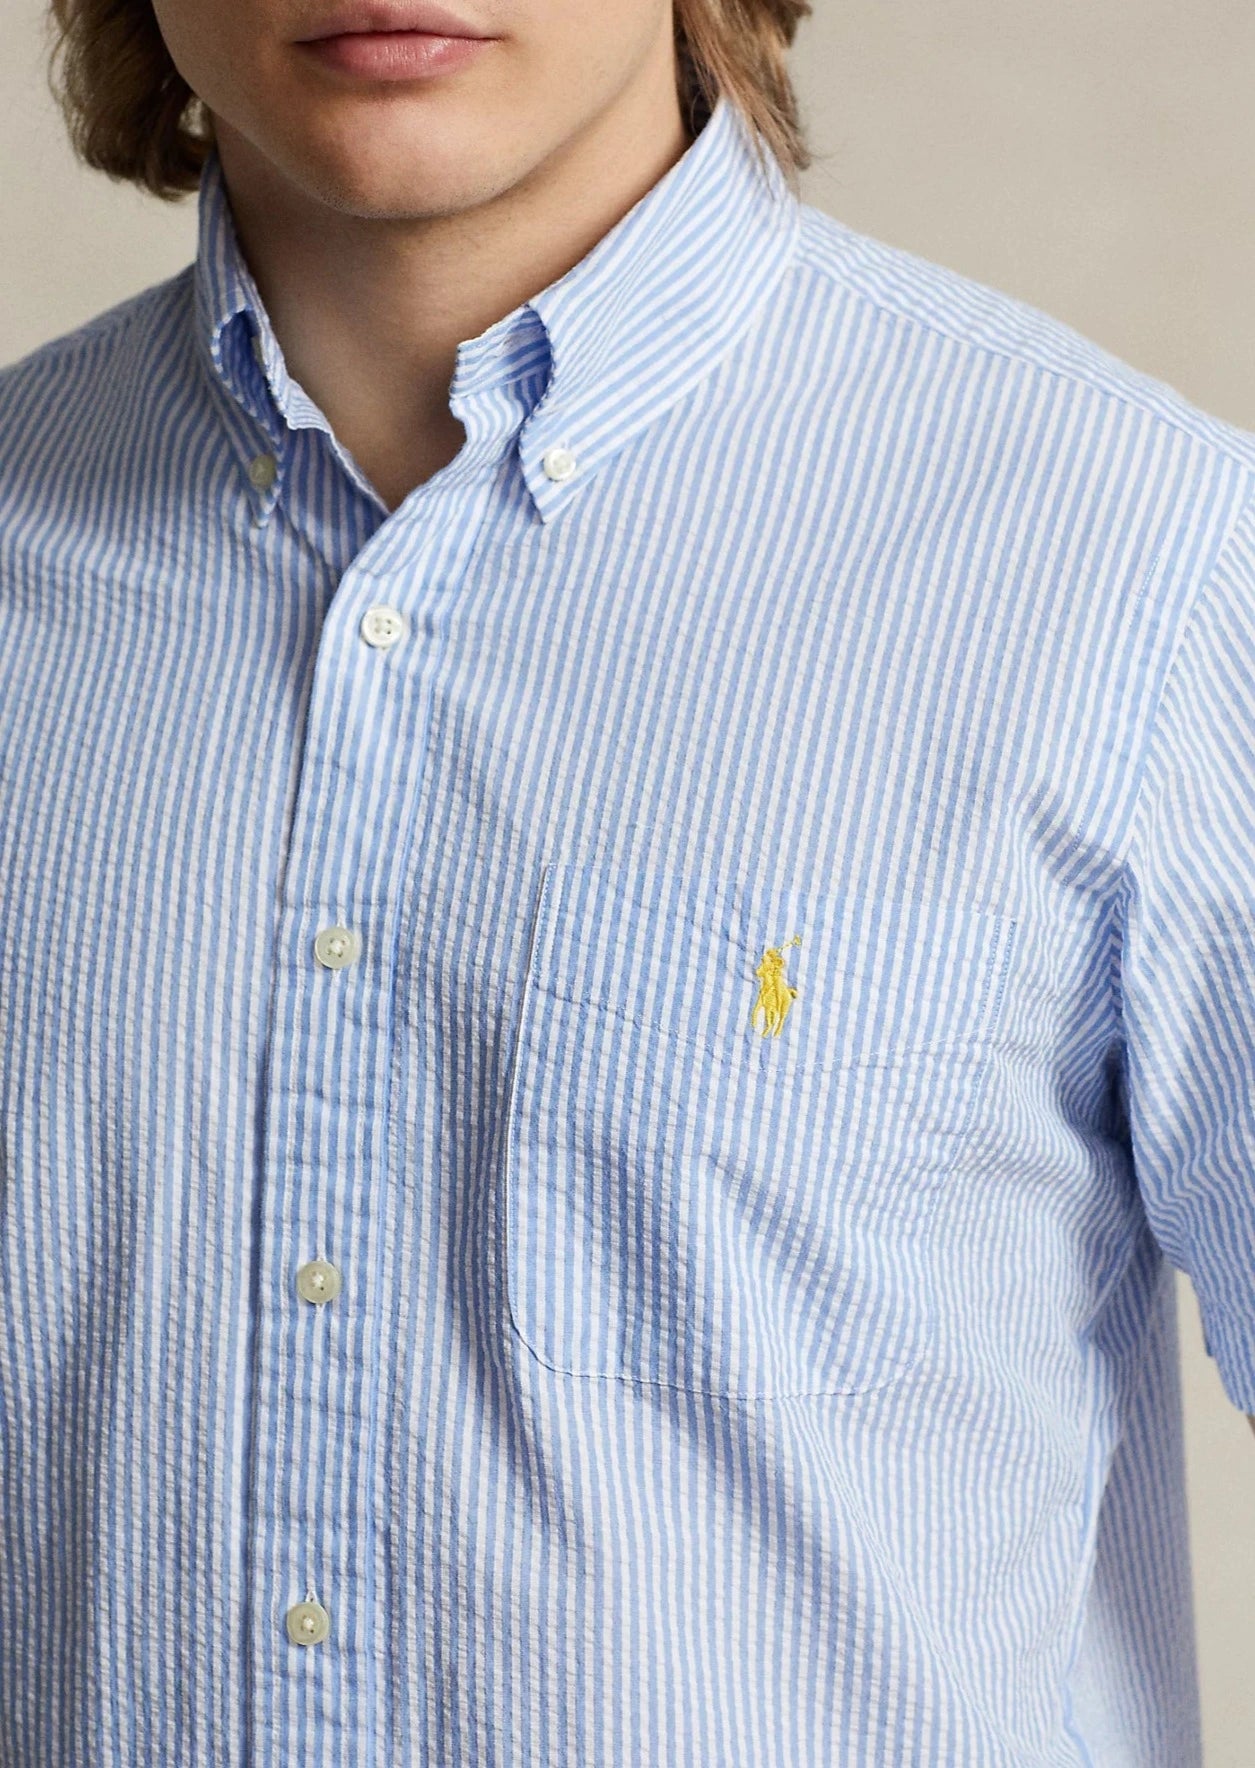 Chemise rayée manches courtes homme Ralph Lauren bleue | Georgespaul